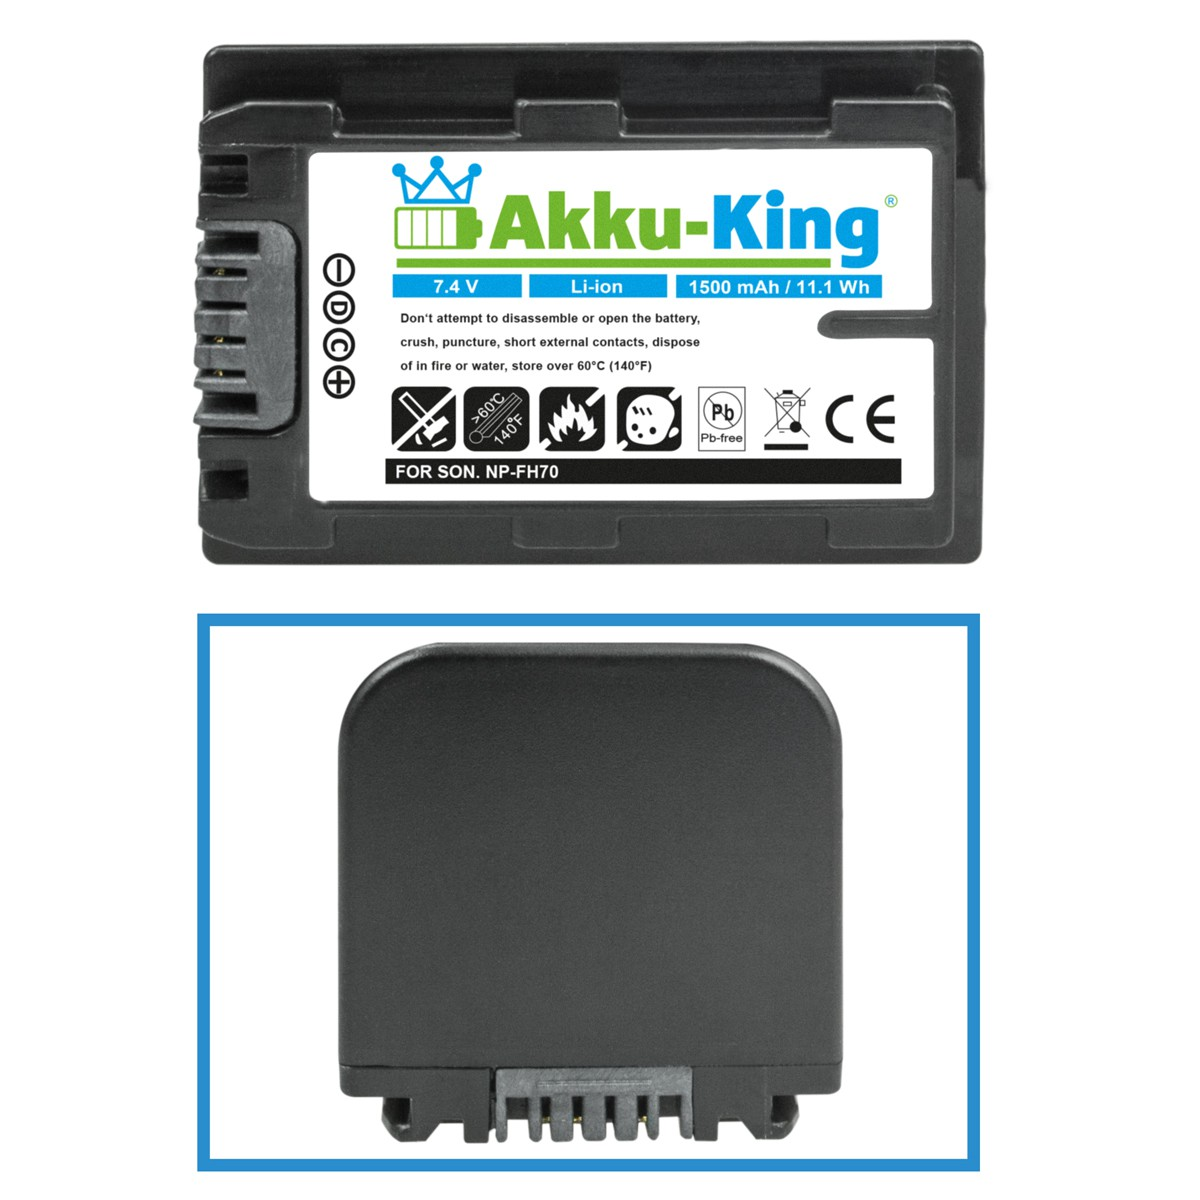 Volt, kompatibel Akku Li-Ion NP-FH70 1500mAh Sony 7.4 AKKU-KING Kamera-Akku, mit